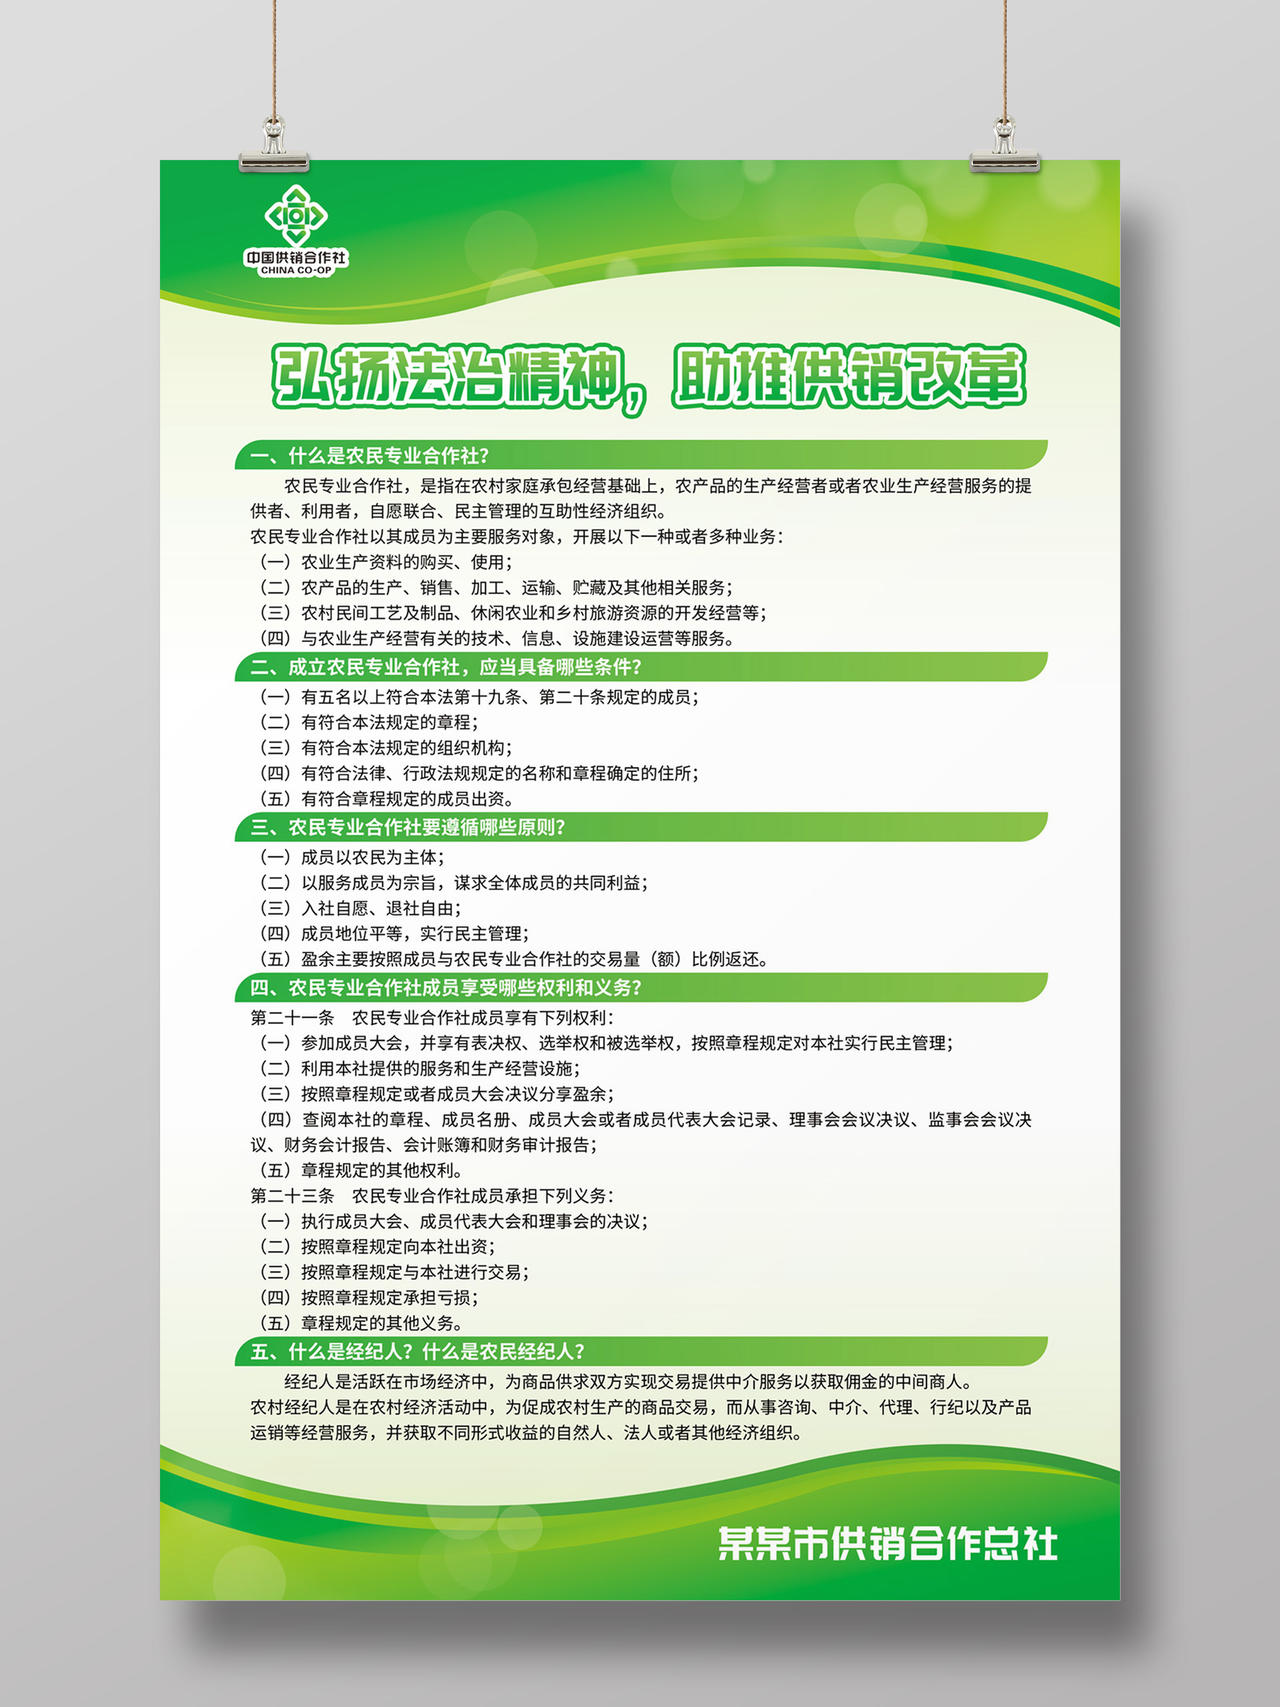 浅绿色简约大气弘扬法治精神中国供销合作社宣传海报